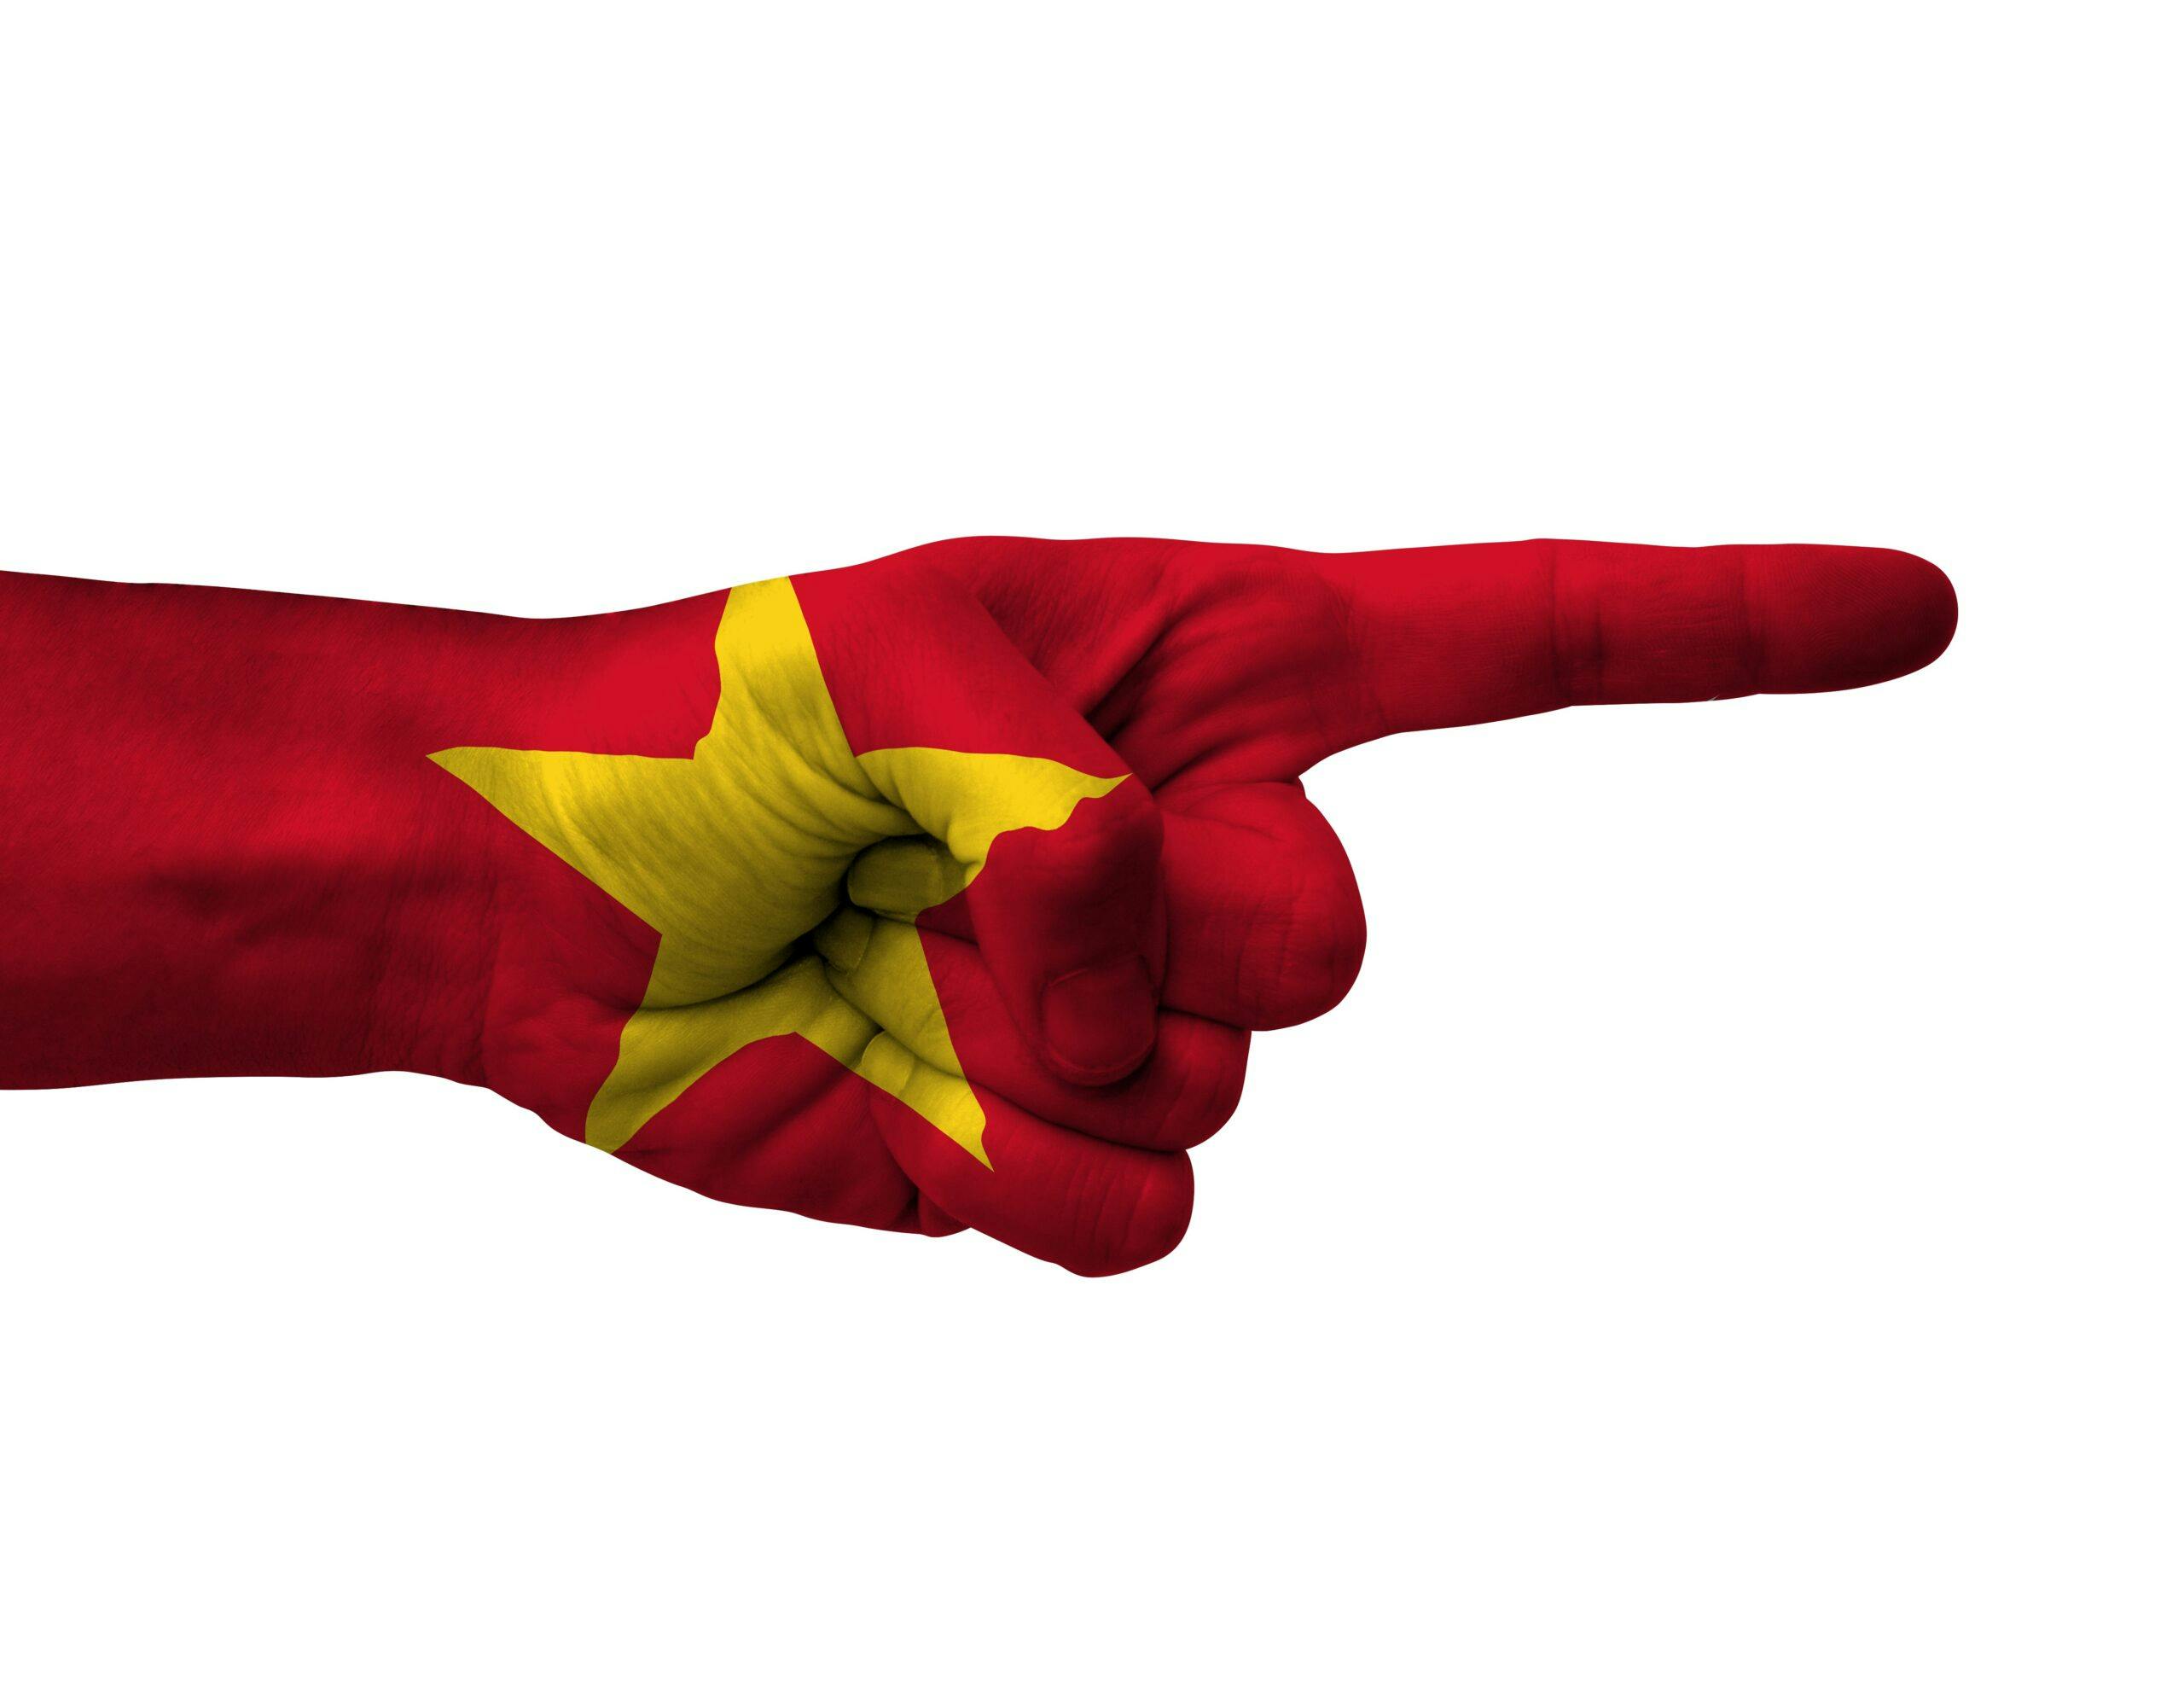 انگشتی به رنگ پرچم ویتنام که به سمت راست اشاره می کند